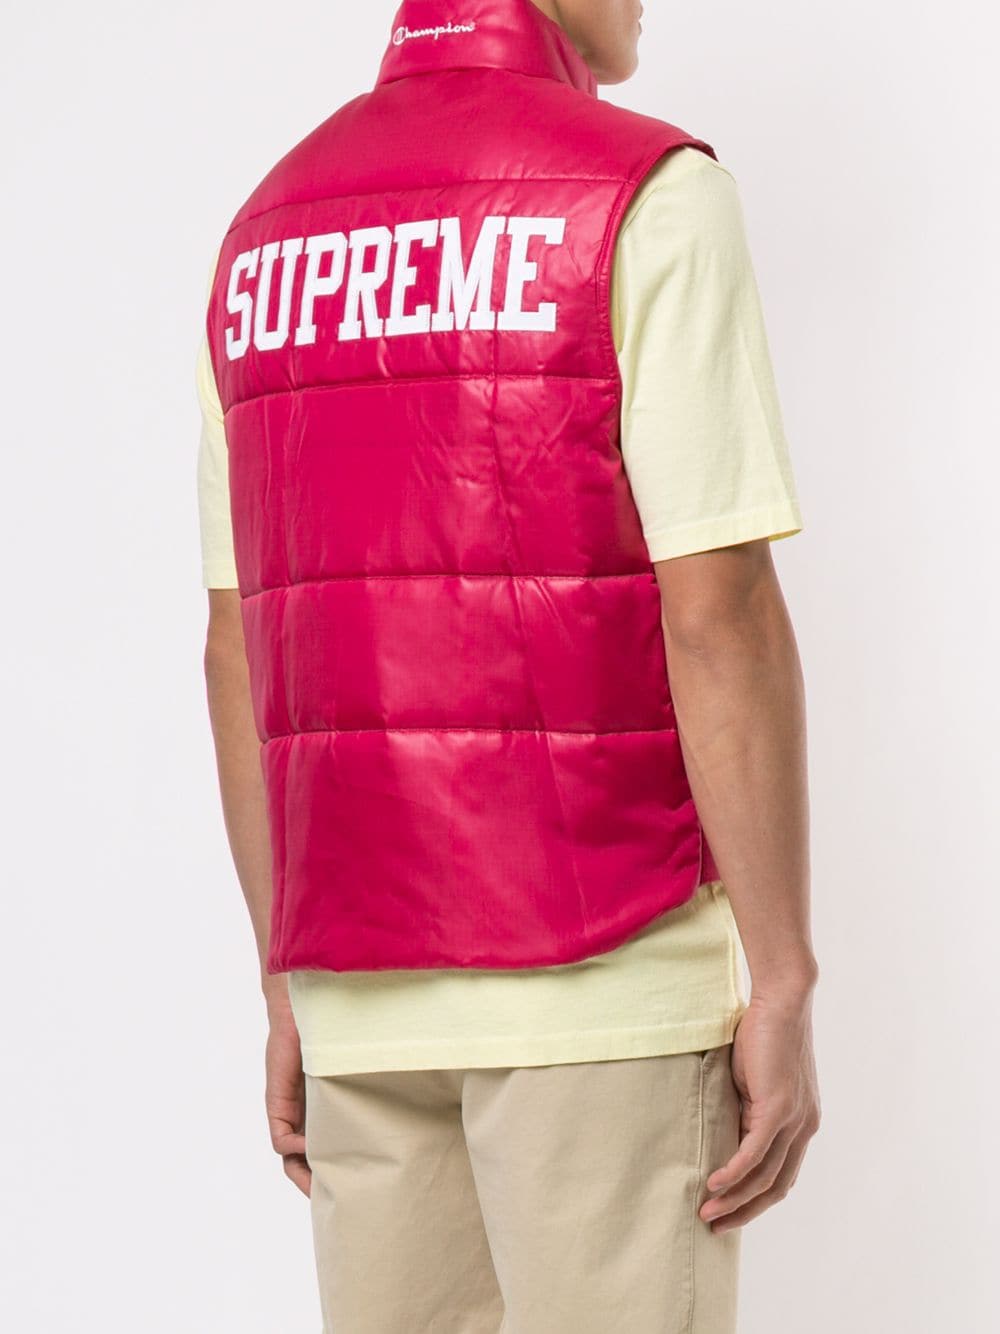 supreme x champion vest,Free delivery,album-web.org